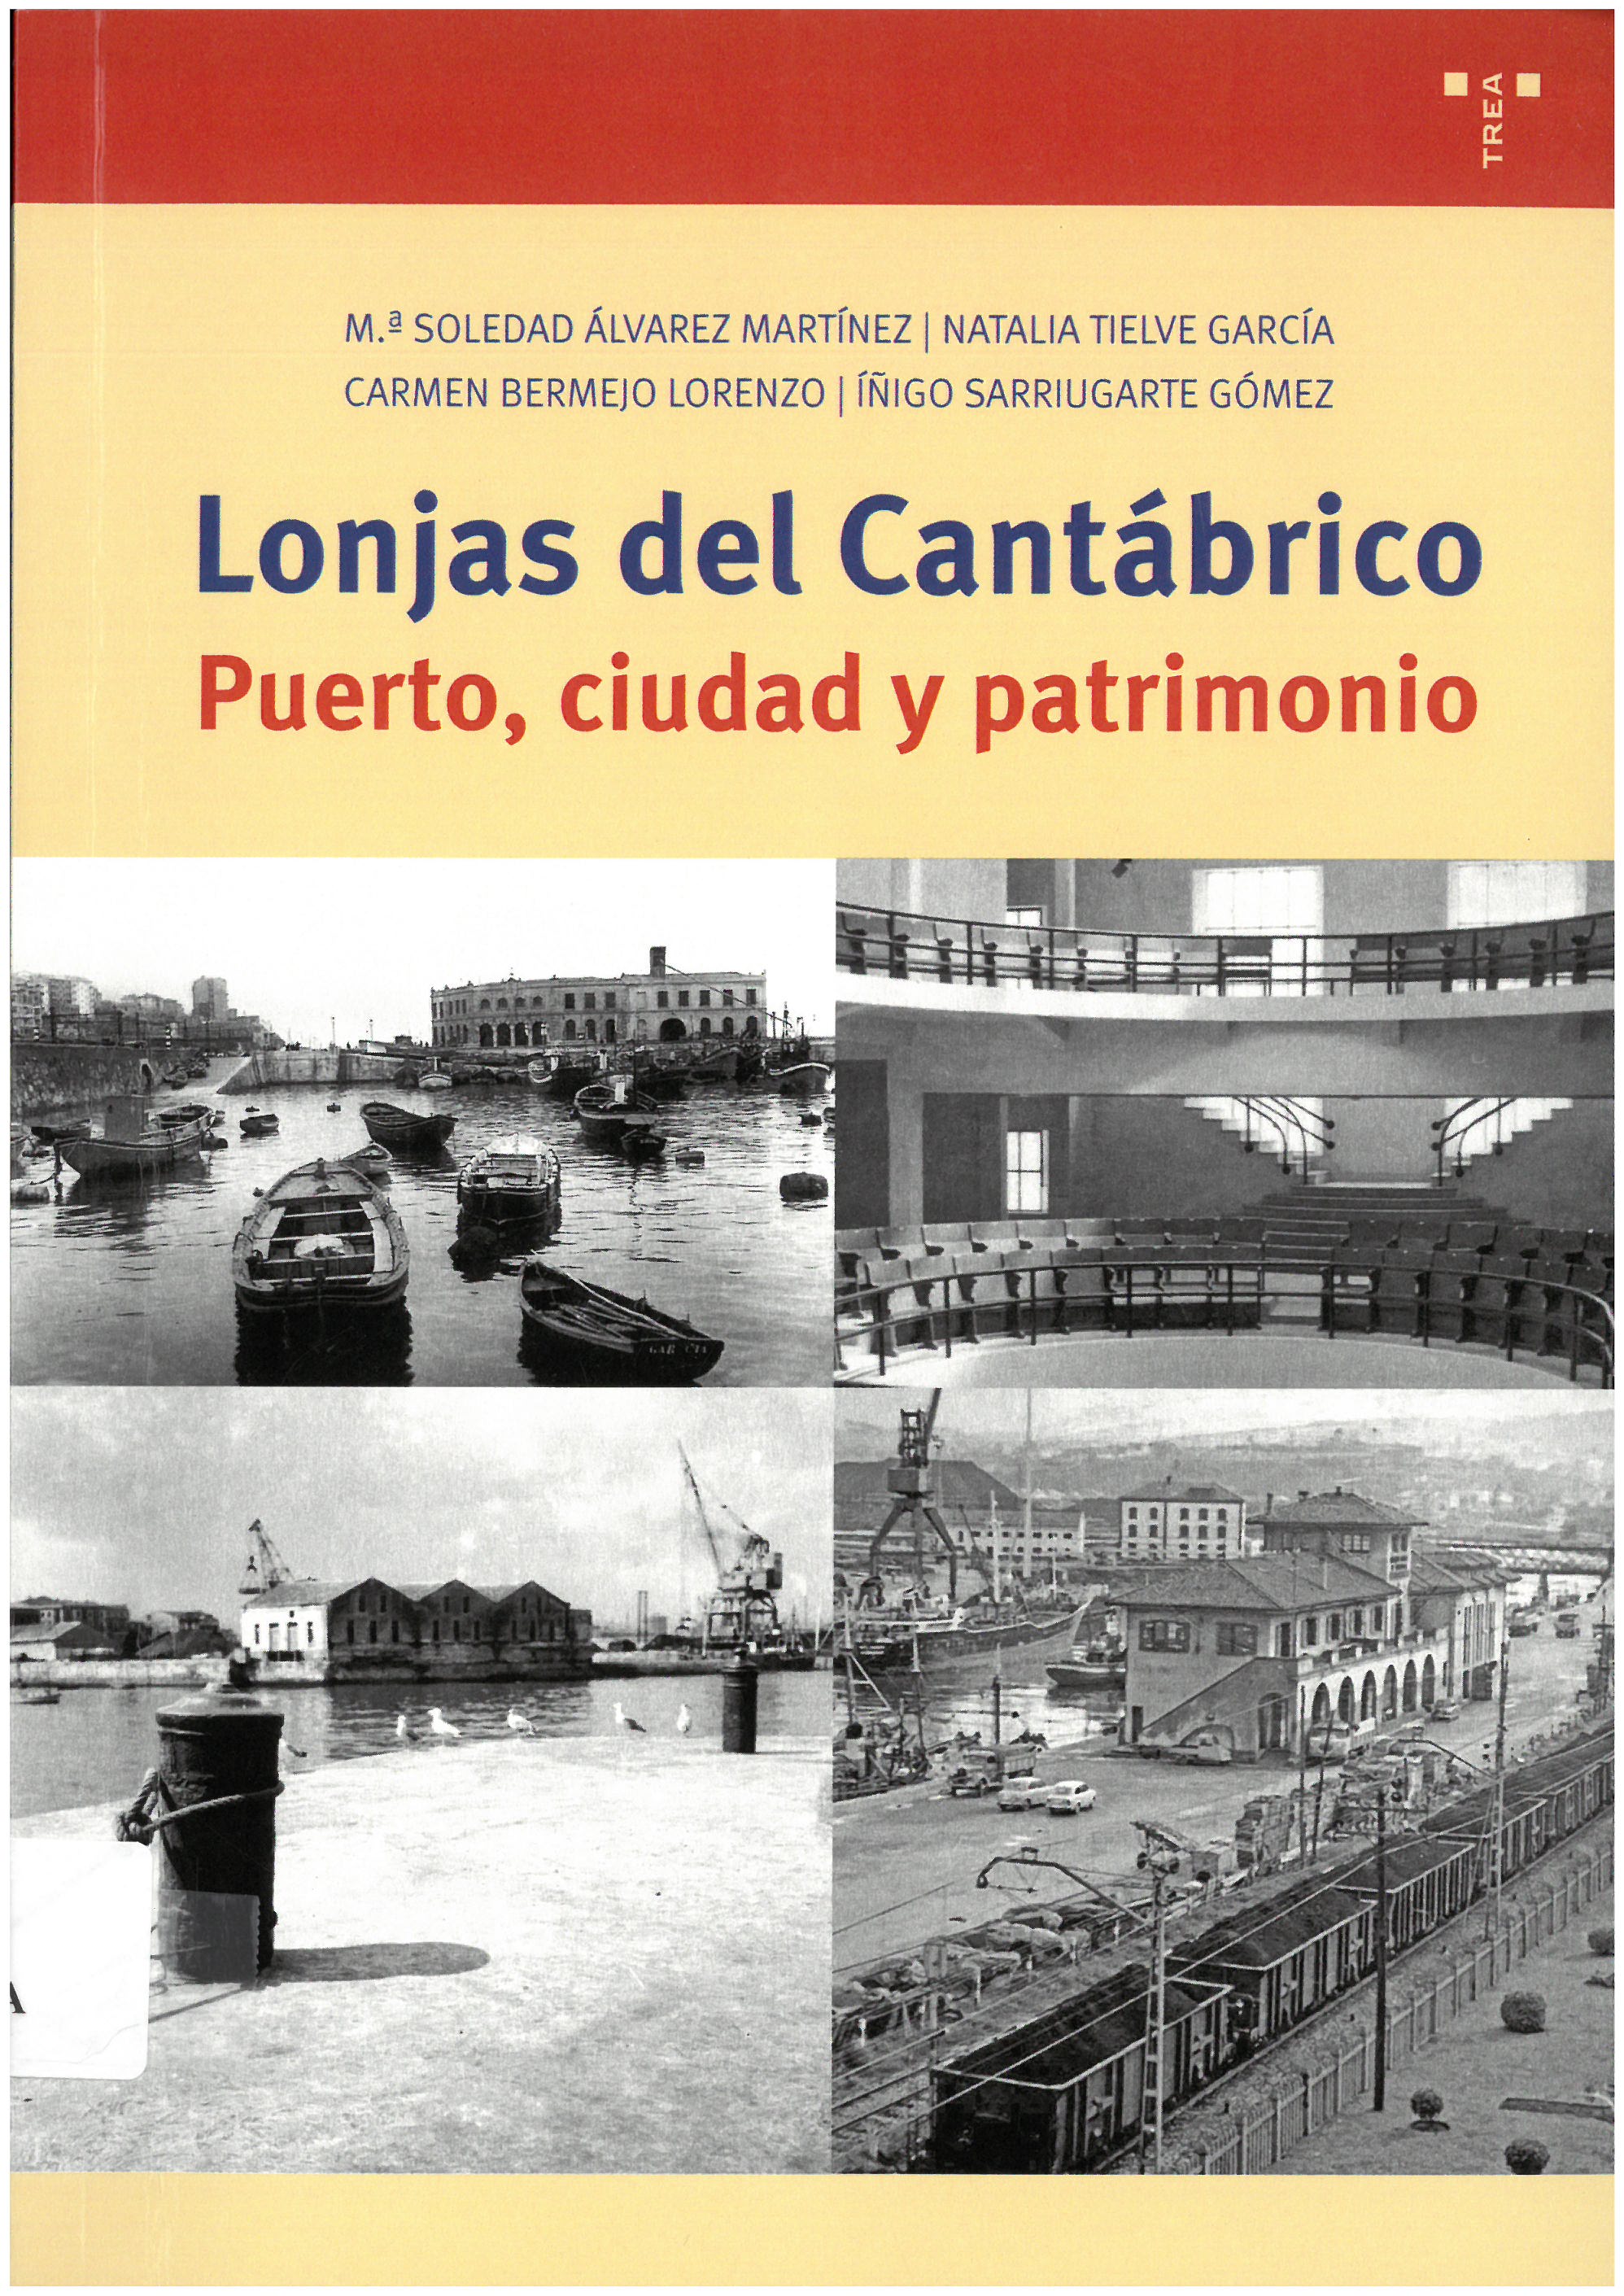 Imagen de portada del libro Lonjas del Cantábrico